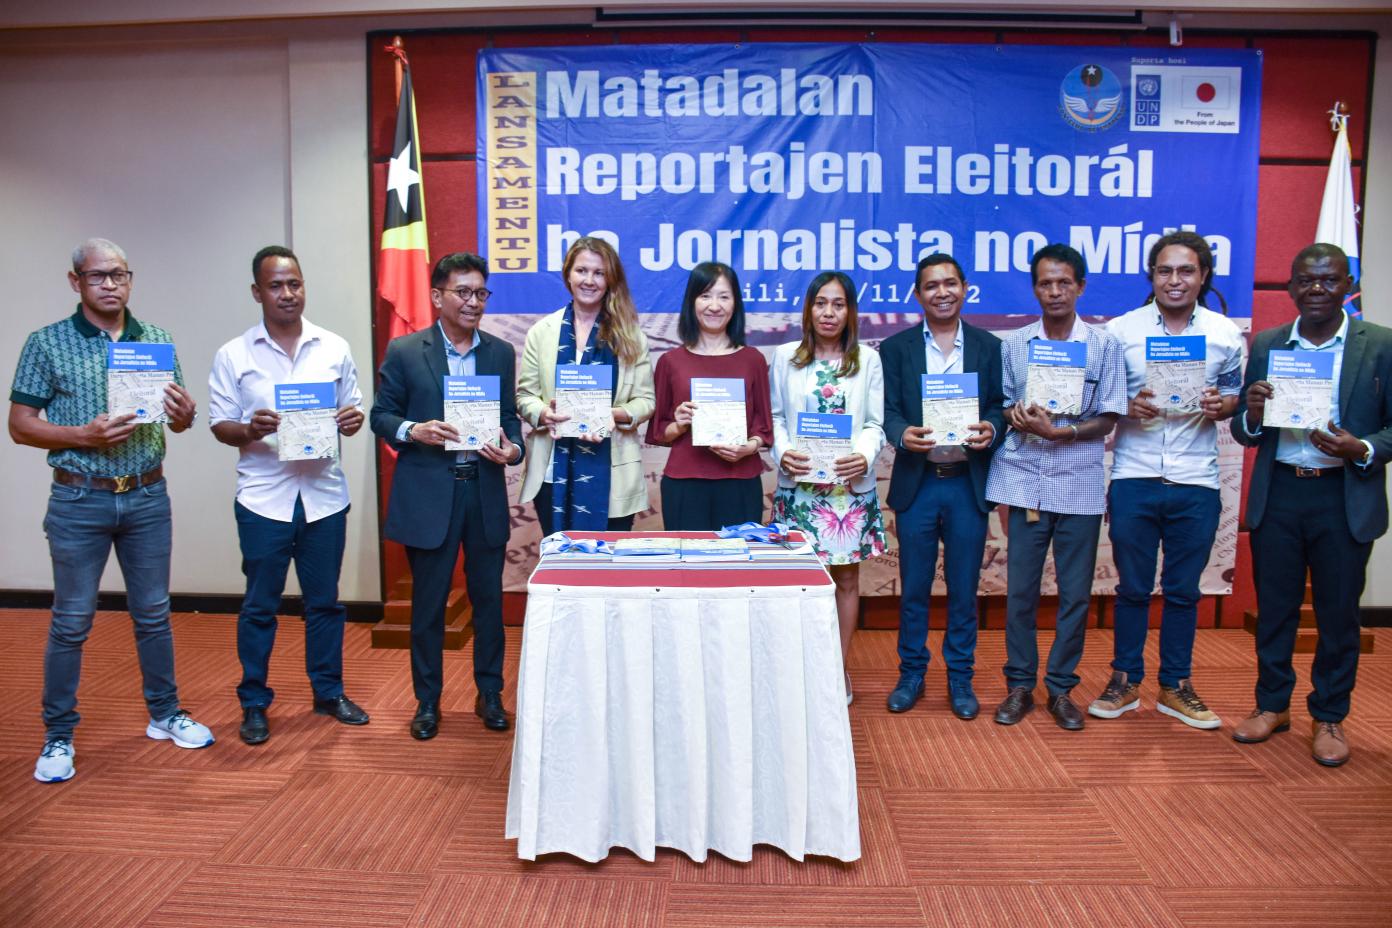 Dewan Pers Timor Leste dan UNDP meluncurkan pedoman jurnalis untuk meliput Pemilu Parlemen